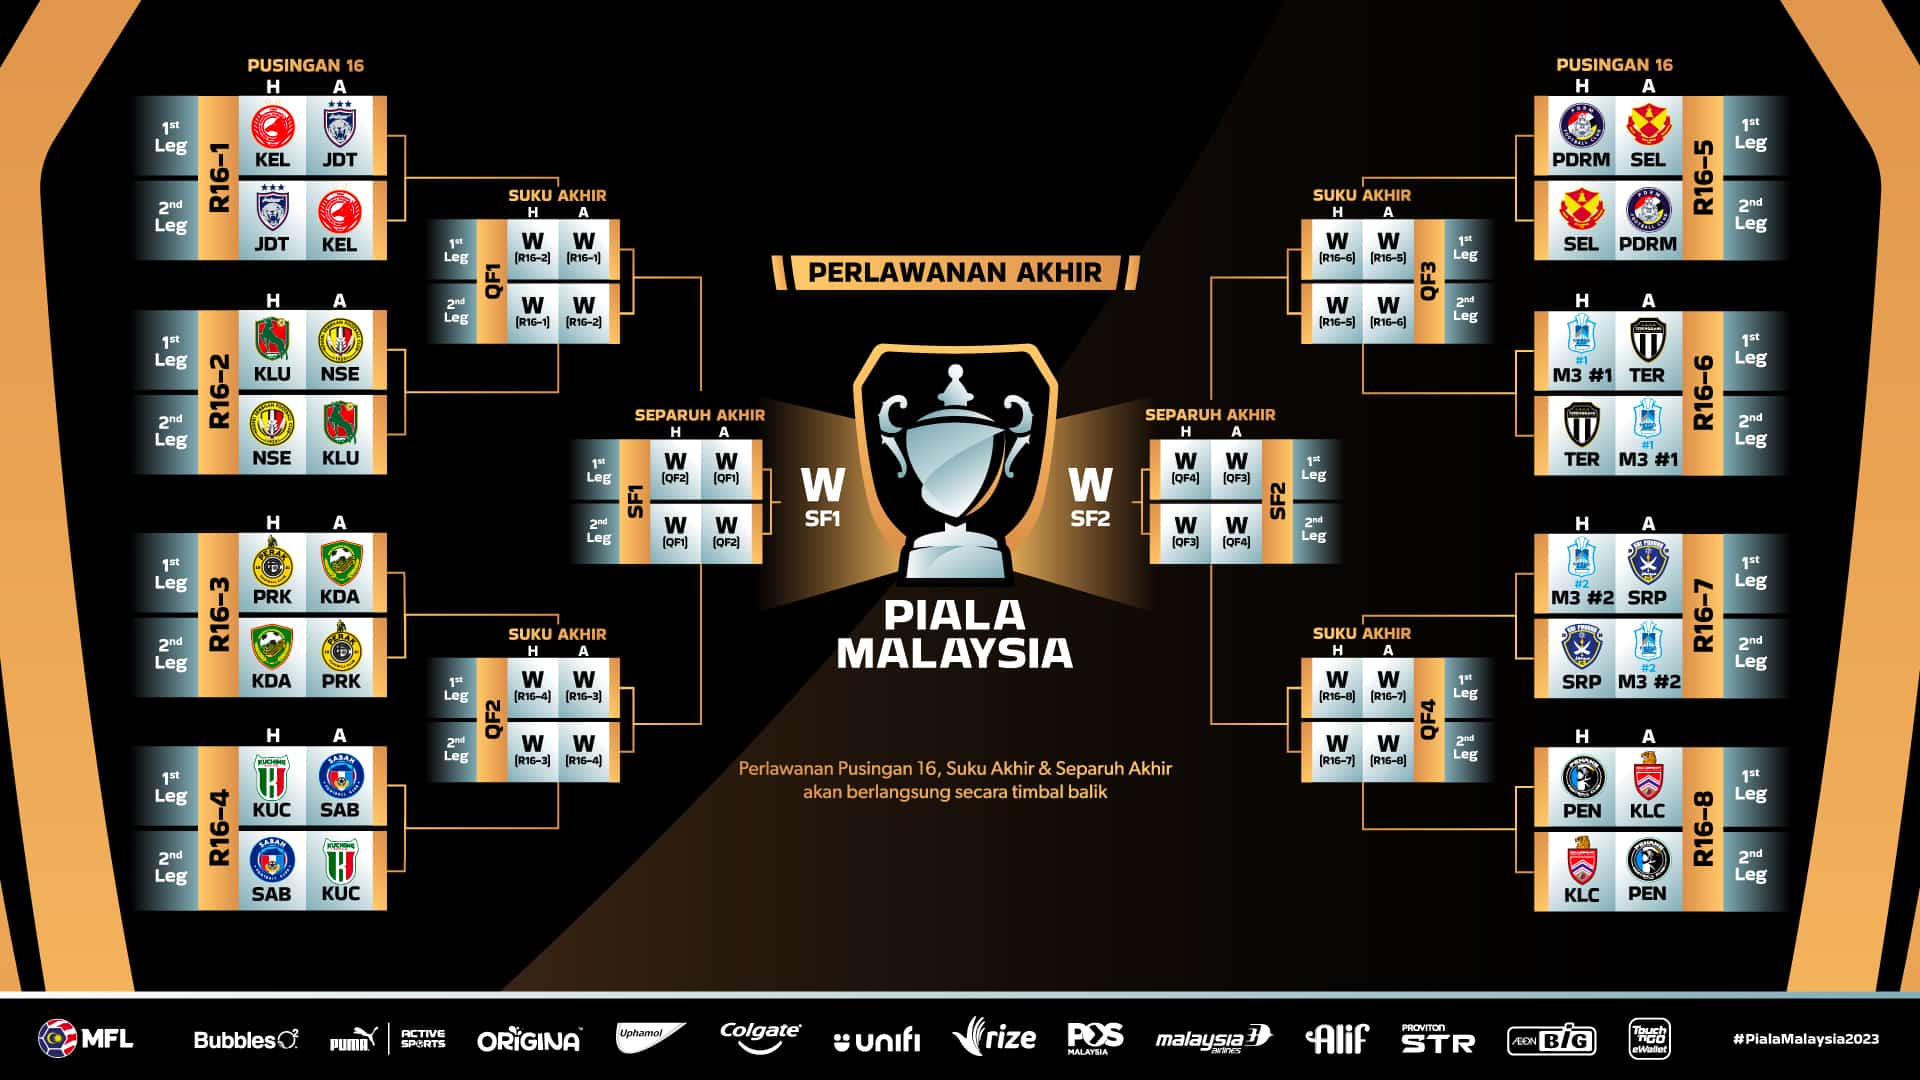 Piala Malaysia 2023 [LIVE] Suku Akhir Kedua, Jadual / Tarikh